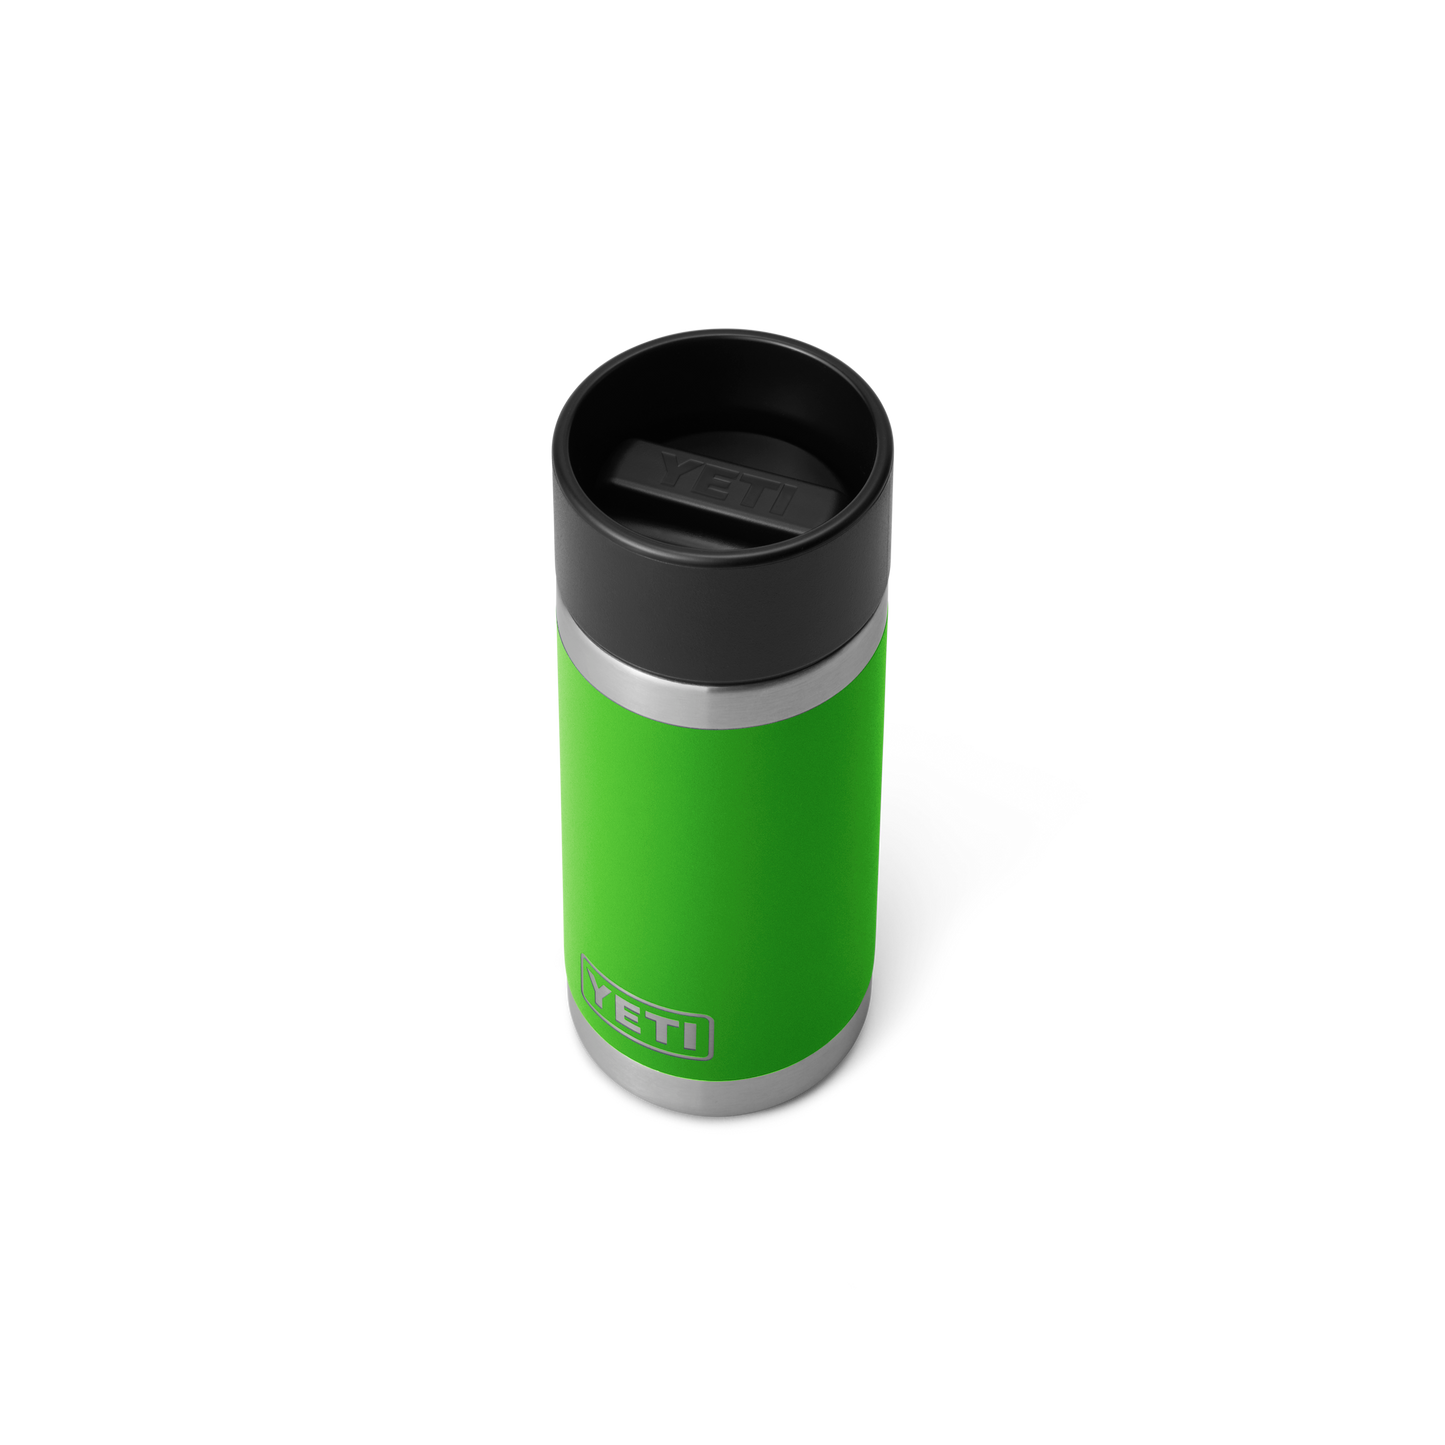 YETI Rambler® 12 oz Flasche mit HotShot-Deckel (354 ml) Canopy Green